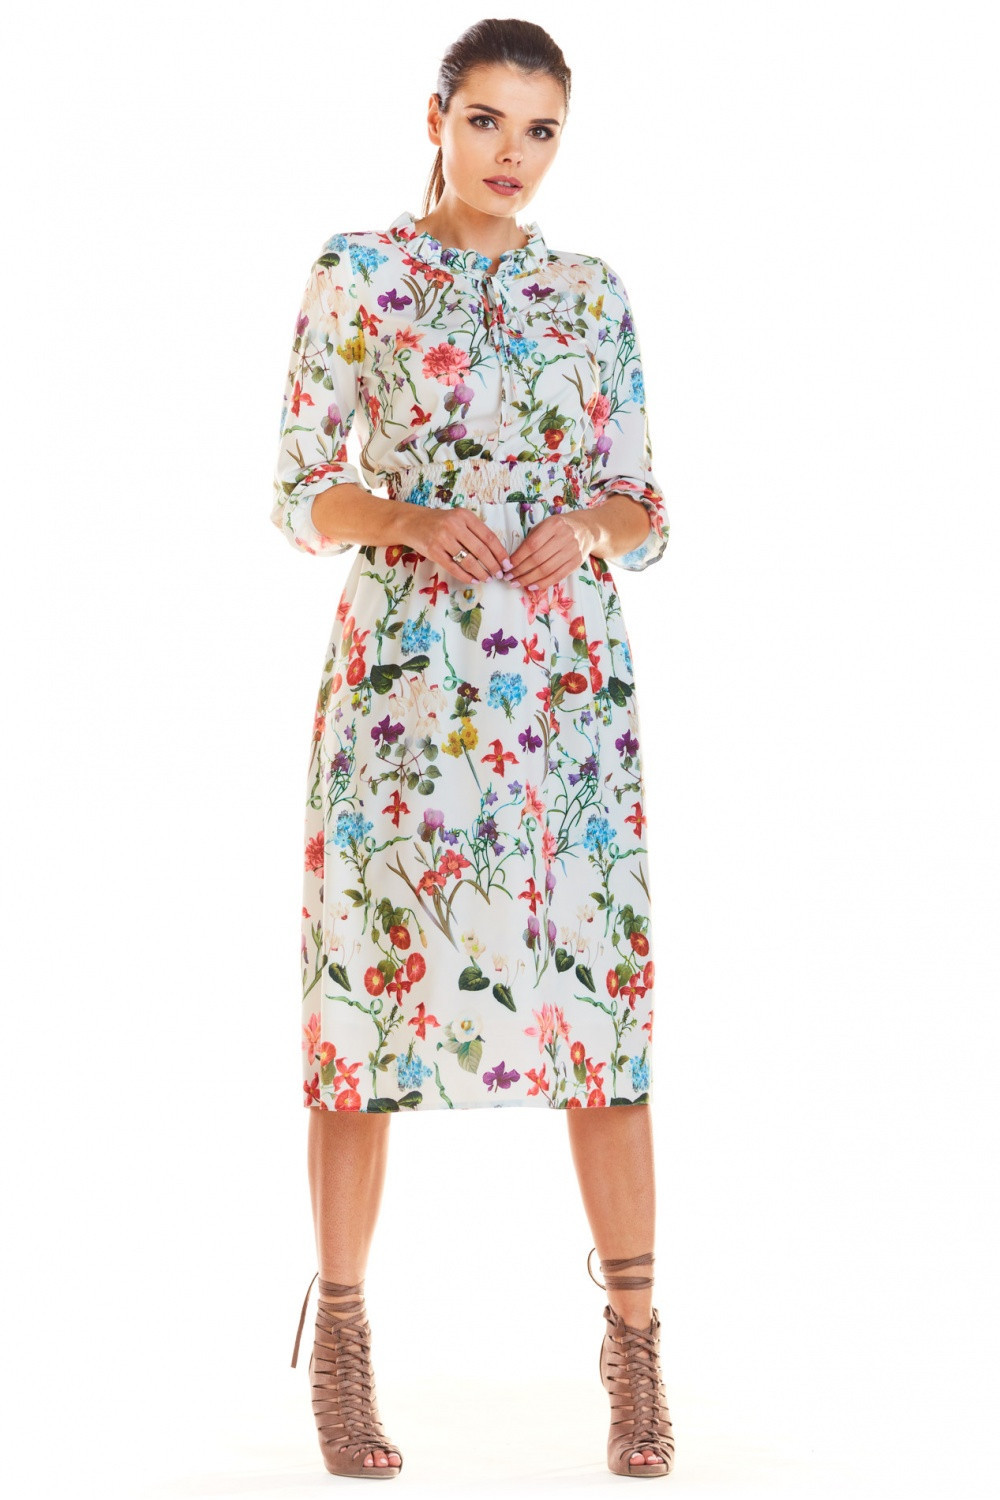 Denní šaty model M201 květovaný vzor Infinite You květy 42/XL